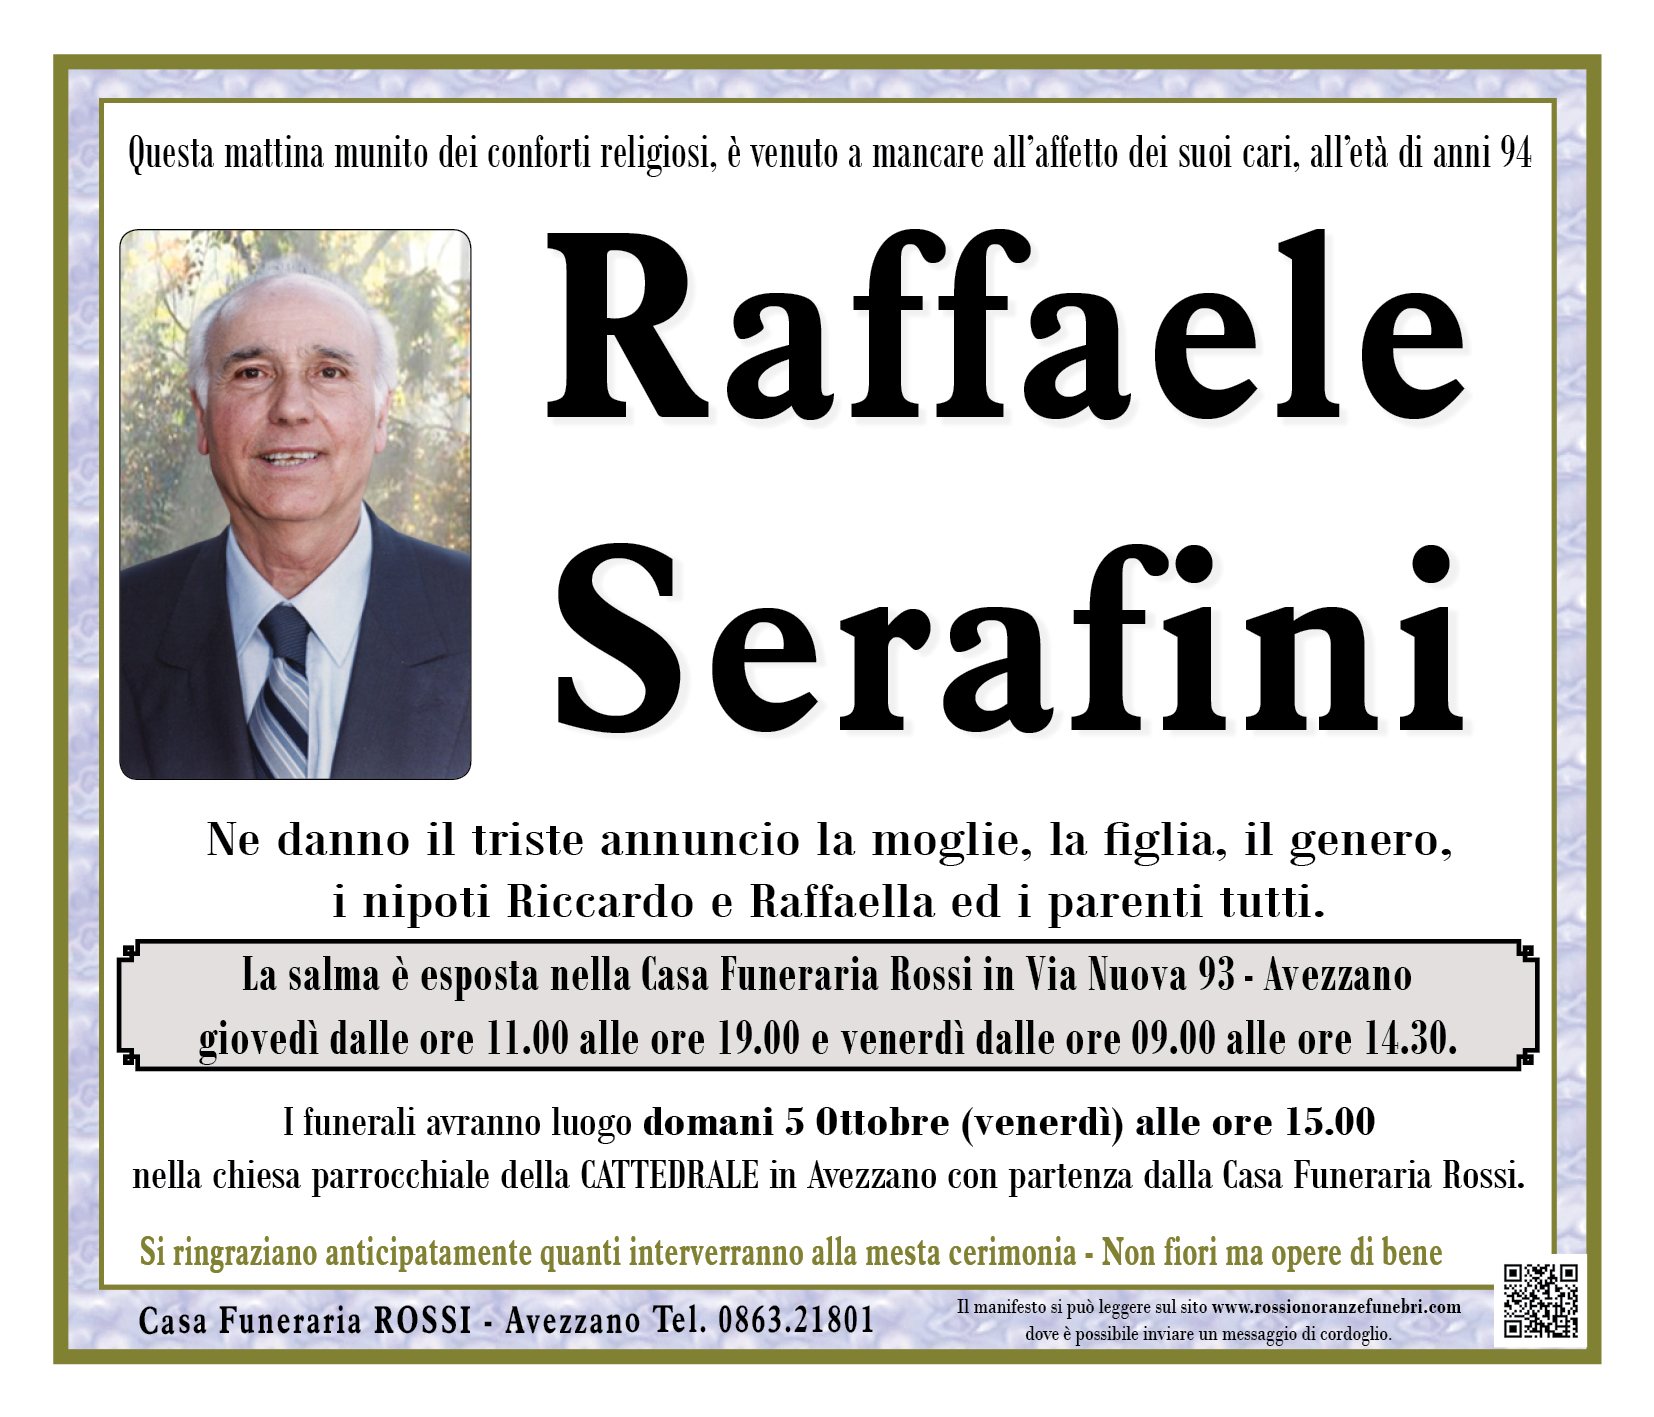 Raffaele Serafini